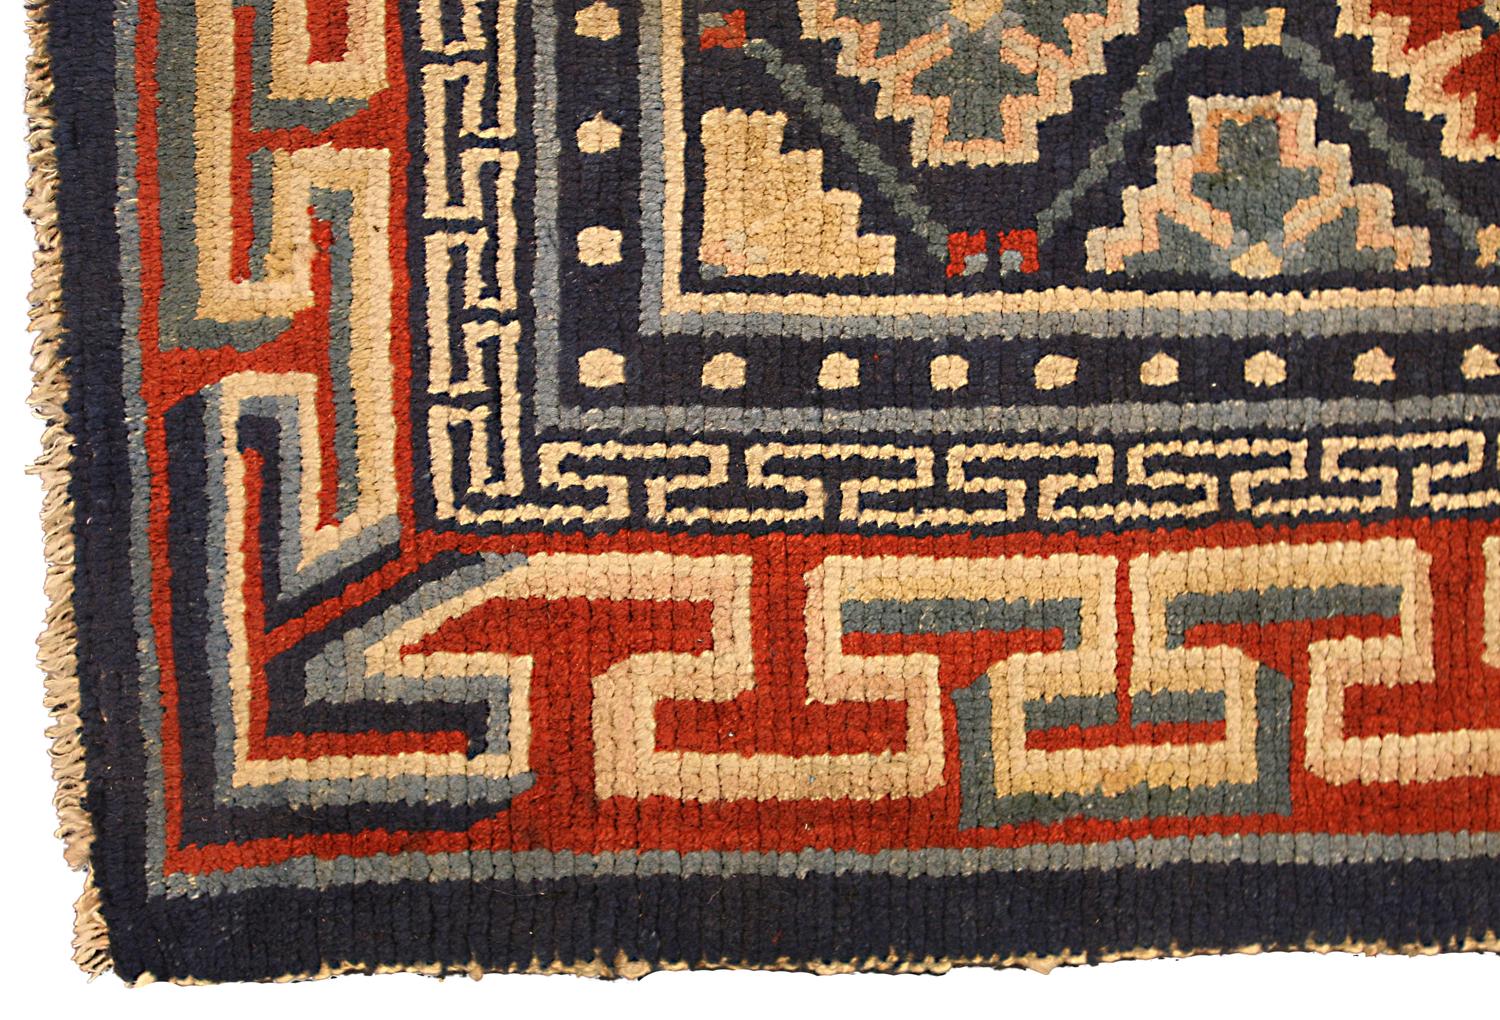 Il s'agit d'un tapis tibétain ancien tissé durant le premier quart du 20e siècle, autour de 1920, et mesurant 80 x 66 cm. Son champ est fait d'un motif de treillis accompagné de motifs abstraits répétitifs de flocons de neige sur un fond bleu foncé.